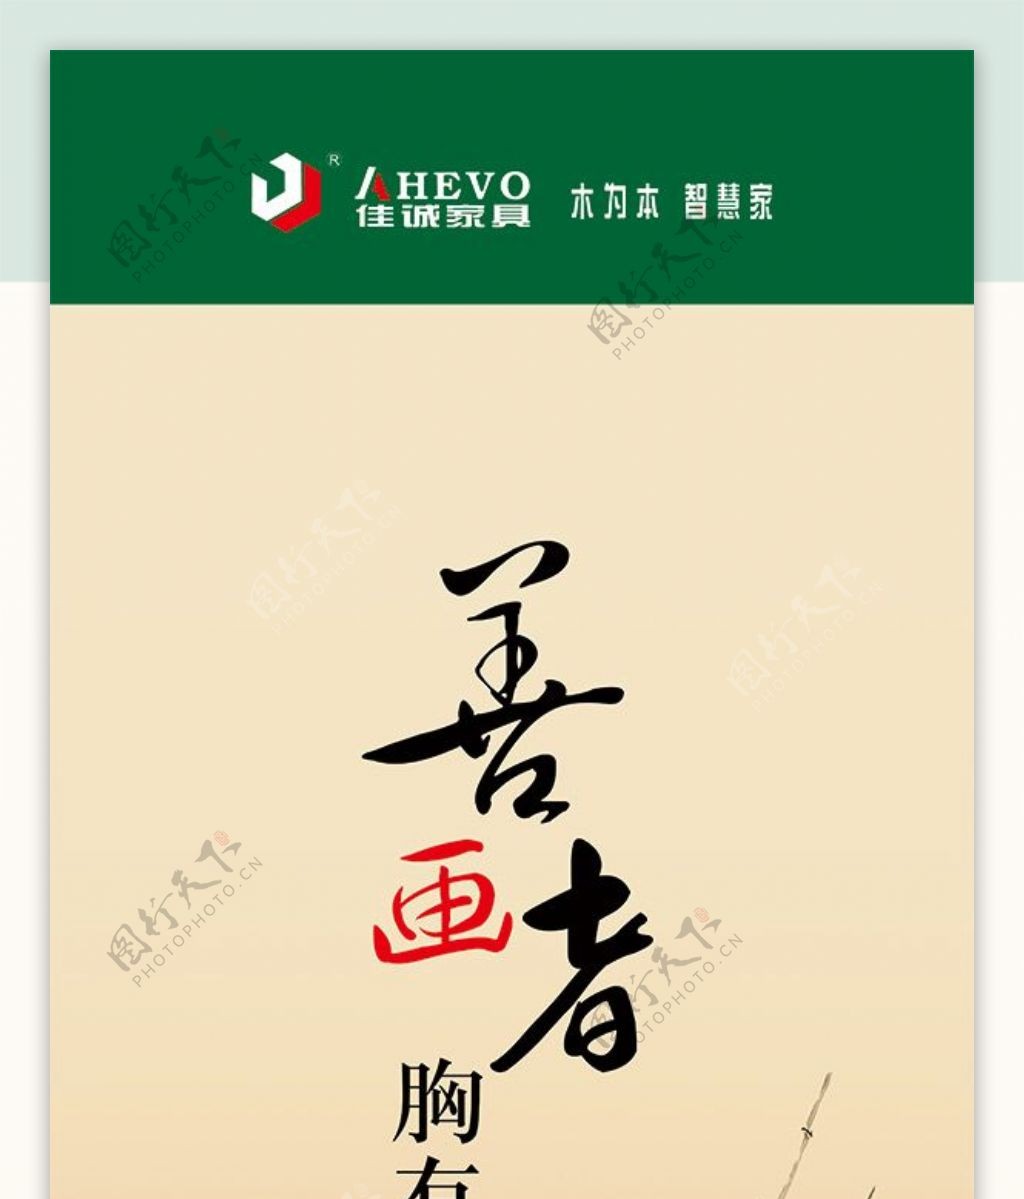 水墨中国风企业文化展板设计PSD素材下载